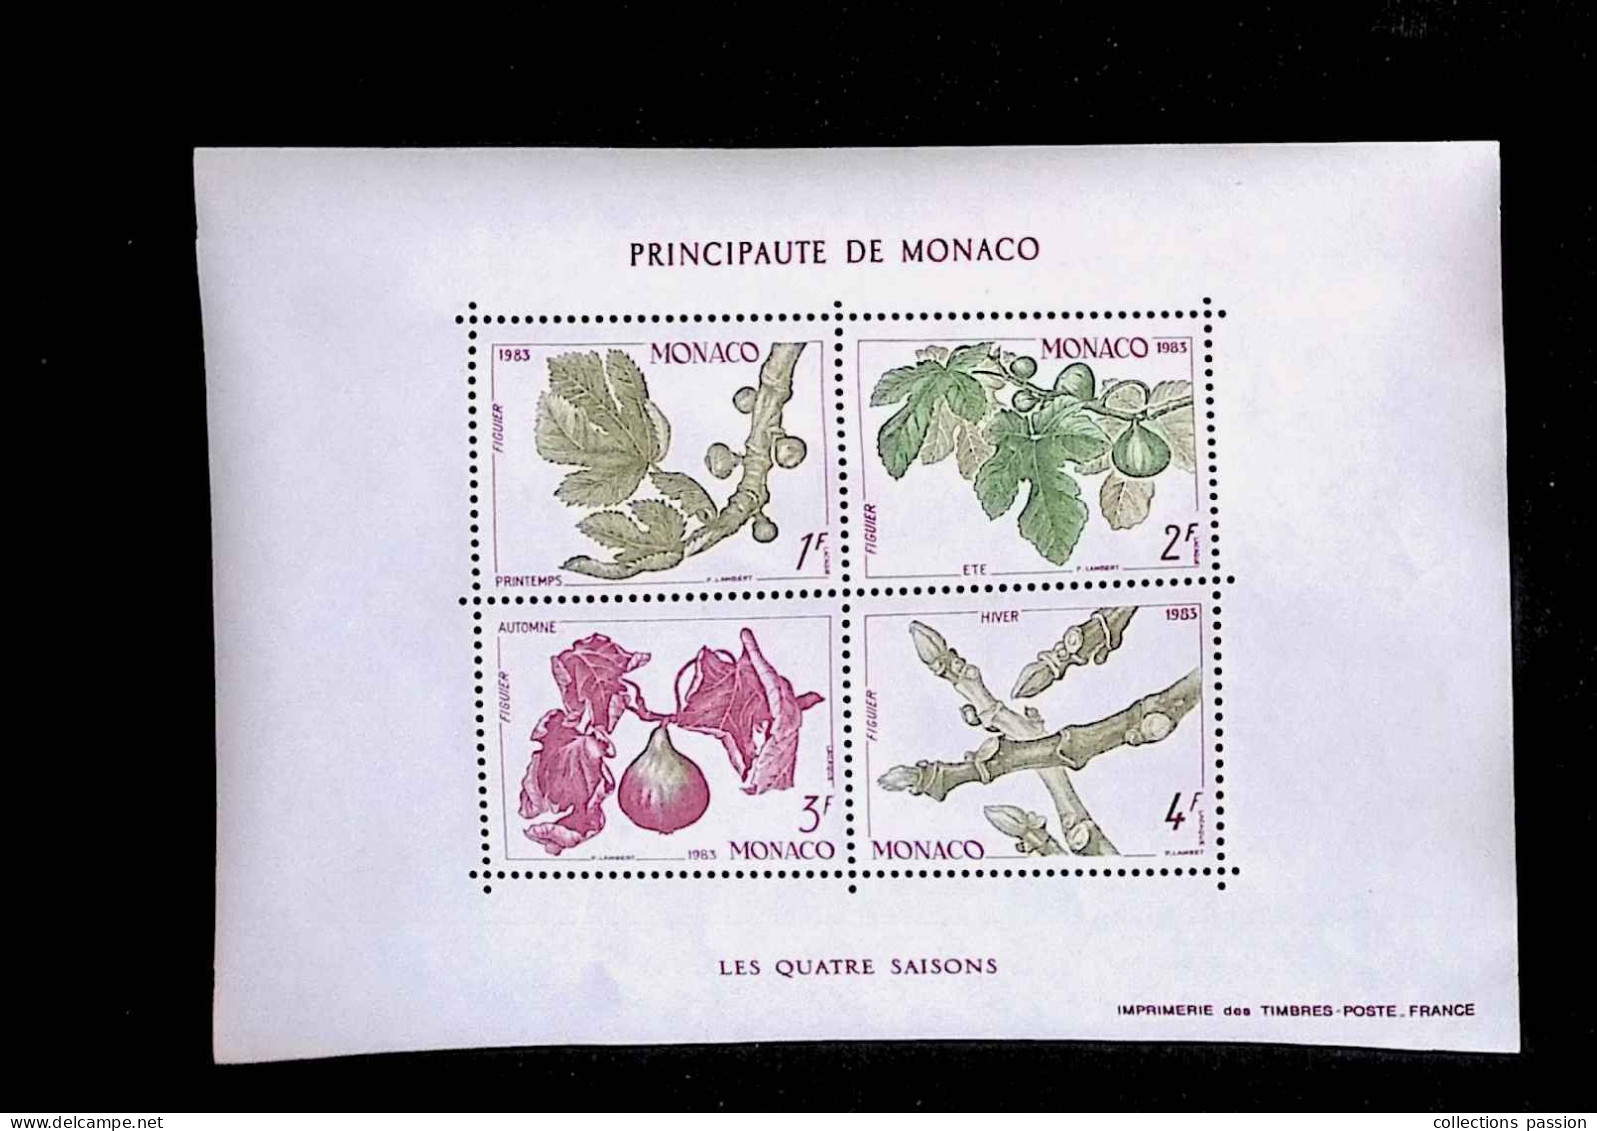 CL, Bloc De 4 Timbres, 1393-96, BF 26, Block, Principauté De Monaco, 1983, LES QUATRE SAISONS - Bloques